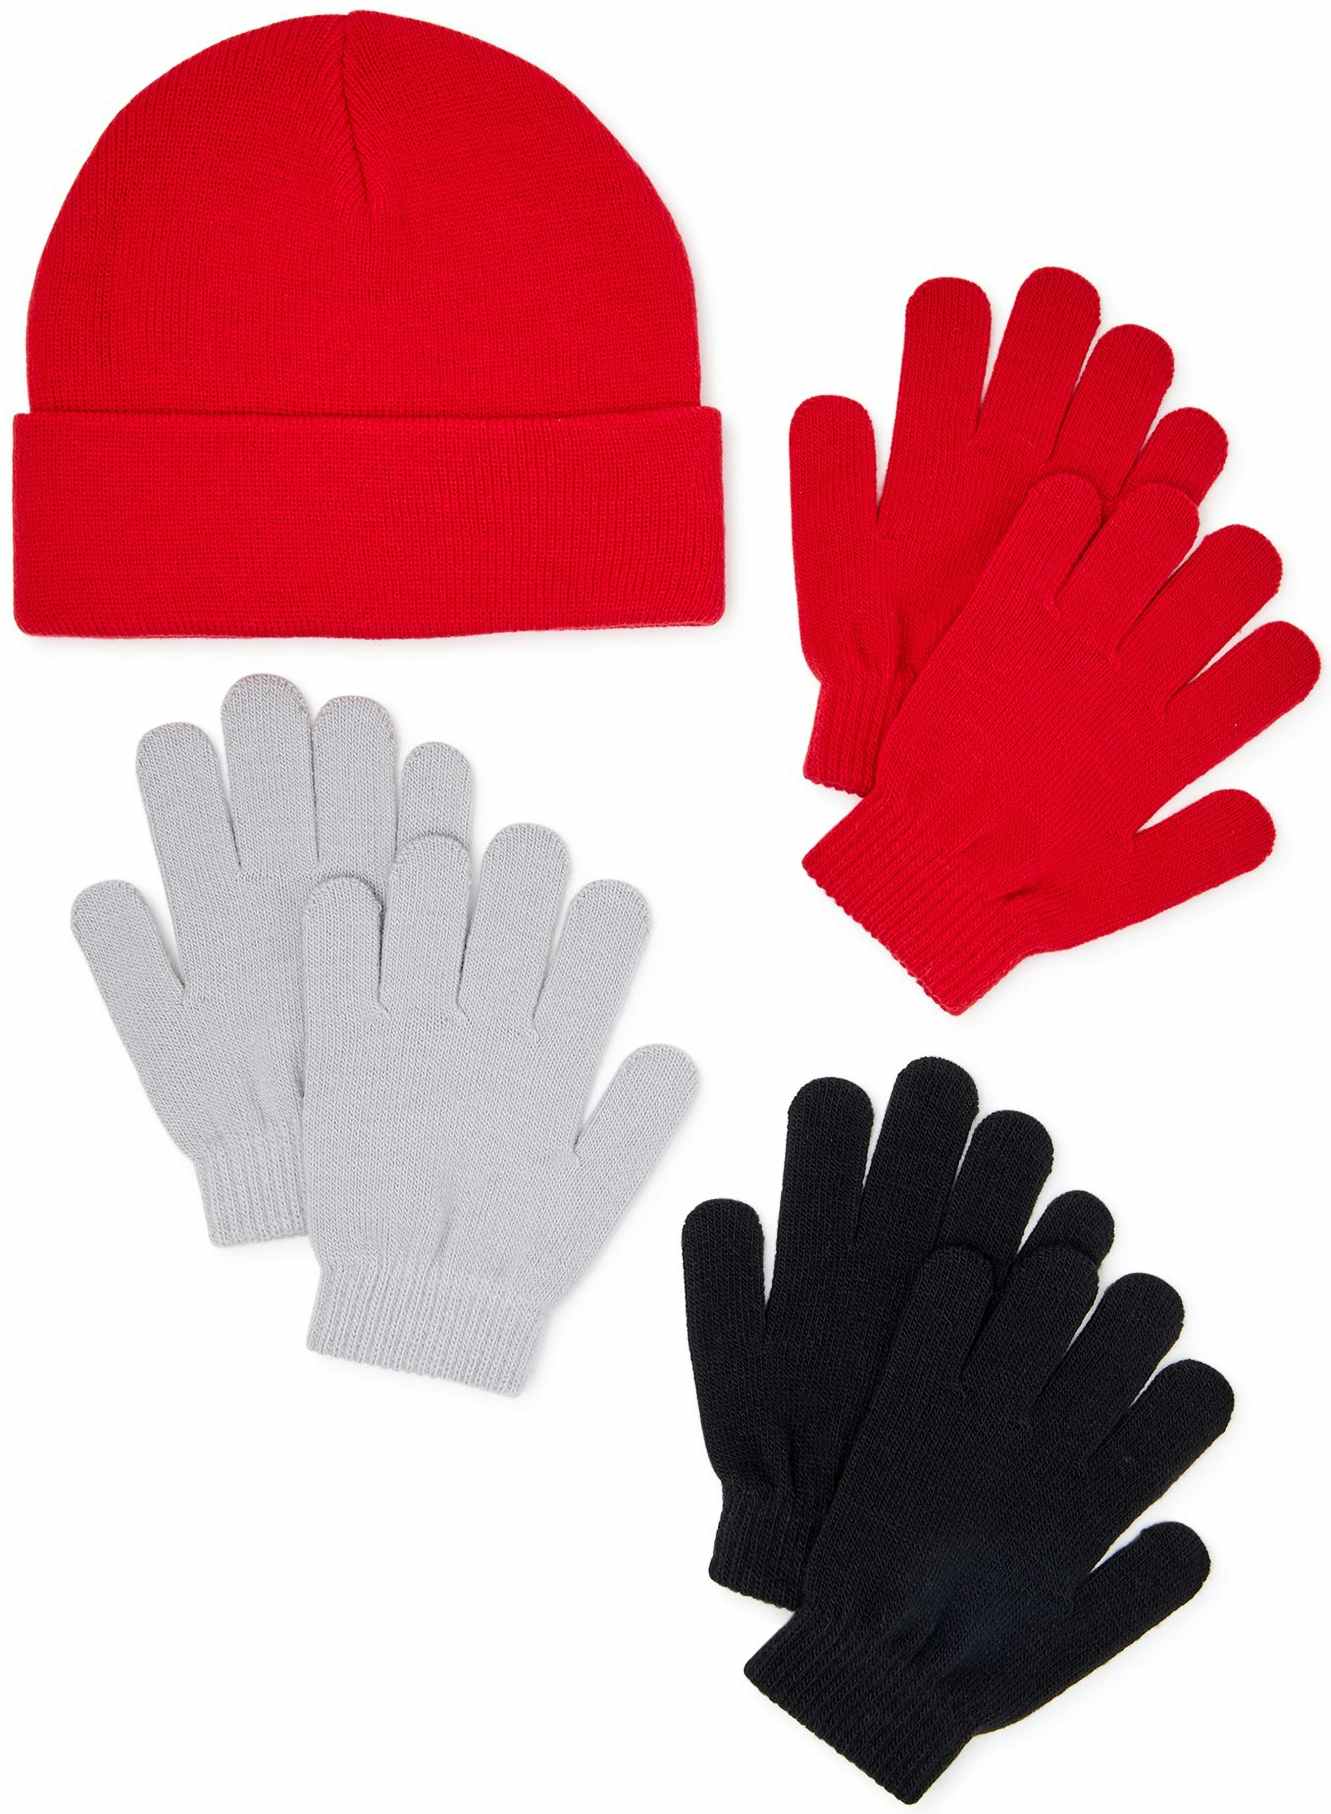 walmart-wonder-nation-gloves-and-hat-2022